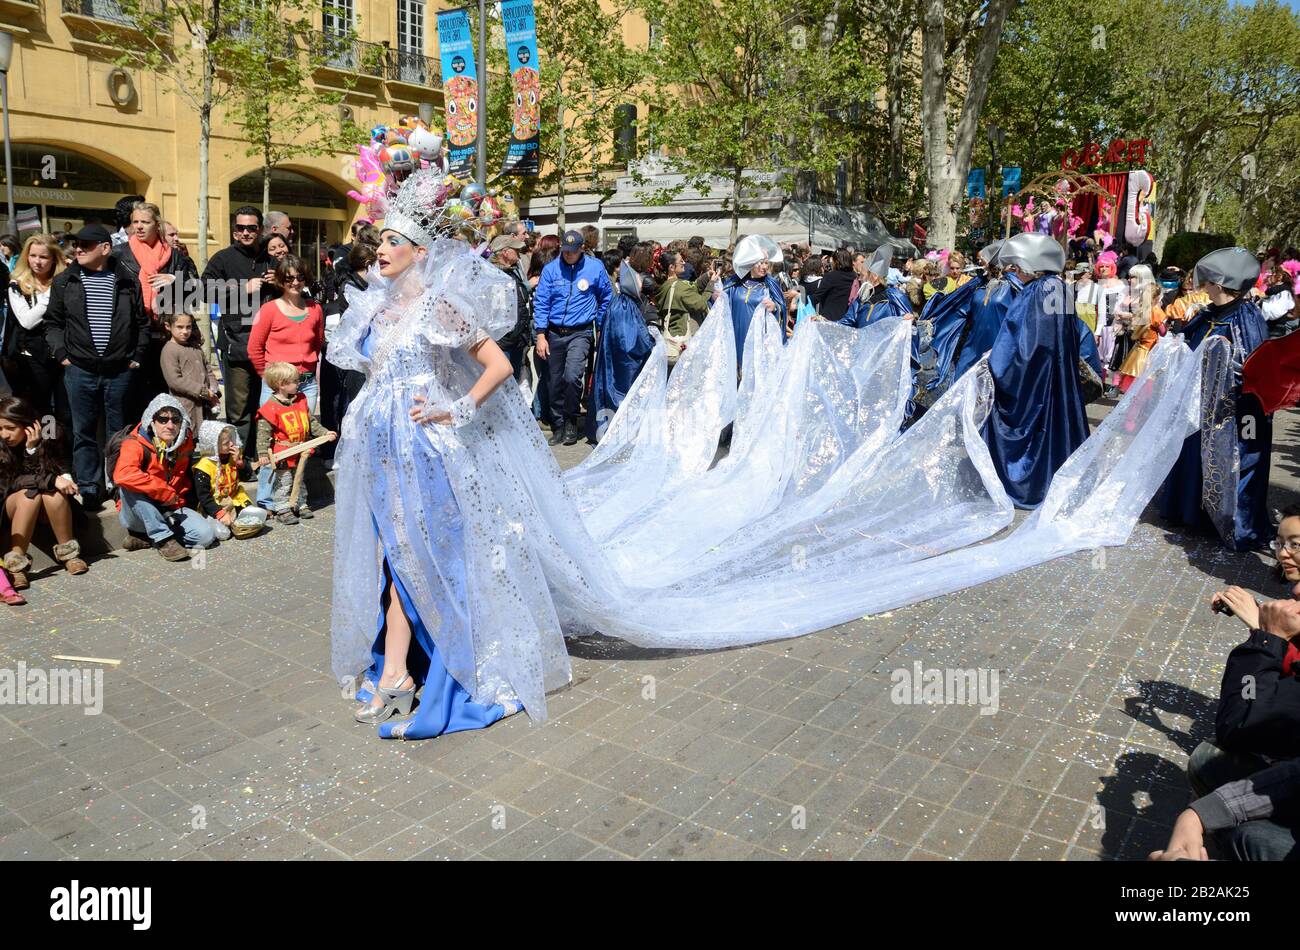 Beauty Queen Con Abito Da Sposa O Abito Da Sposa A Coda Lunga, Carnevale Di Primavera O Processione, Cours Mirabeau, Aix-En-Provence Francia Foto Stock